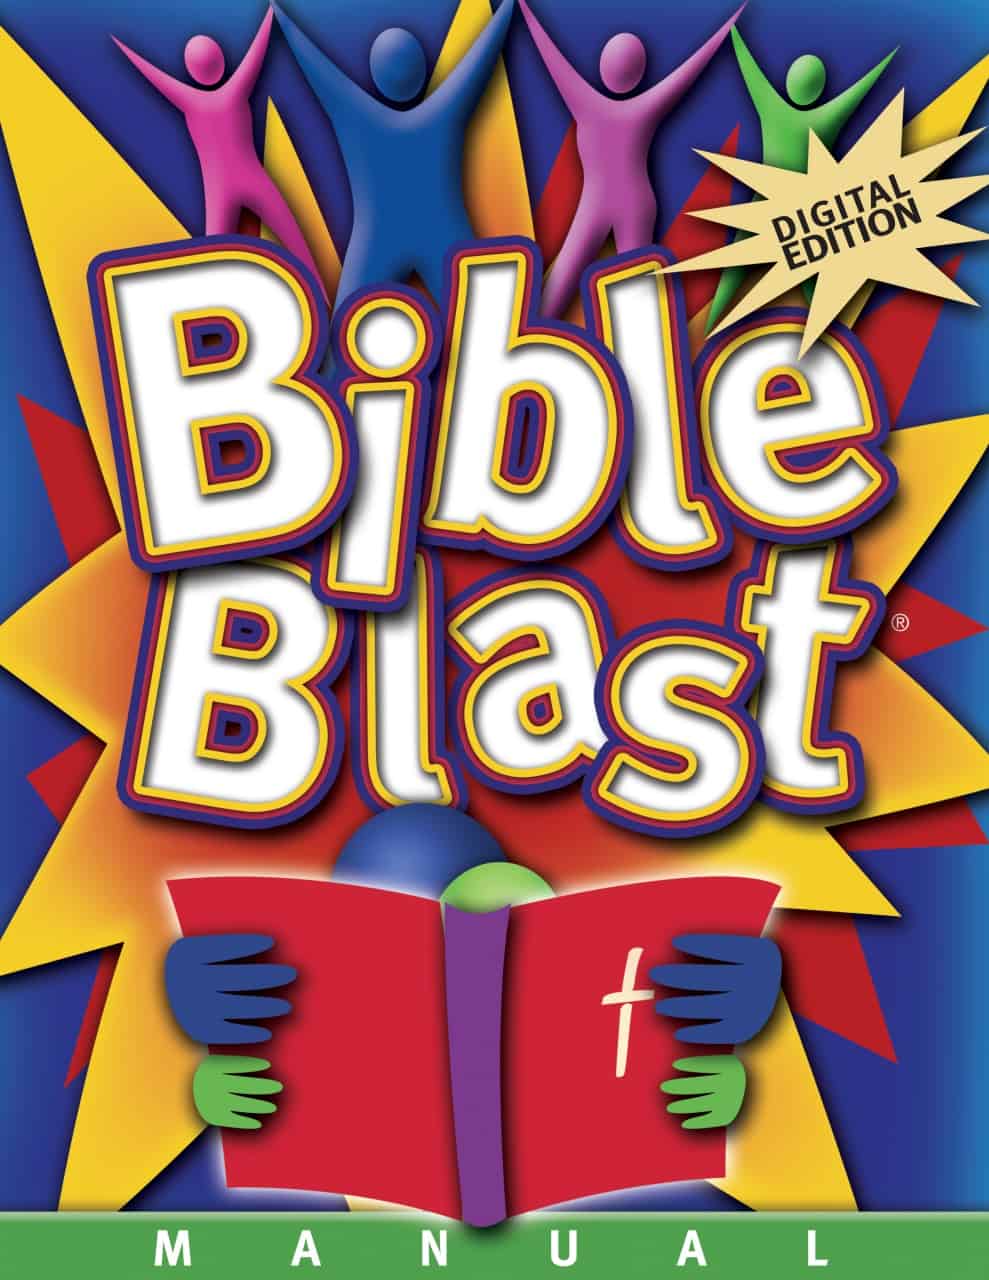 Kids Bible Curriculum